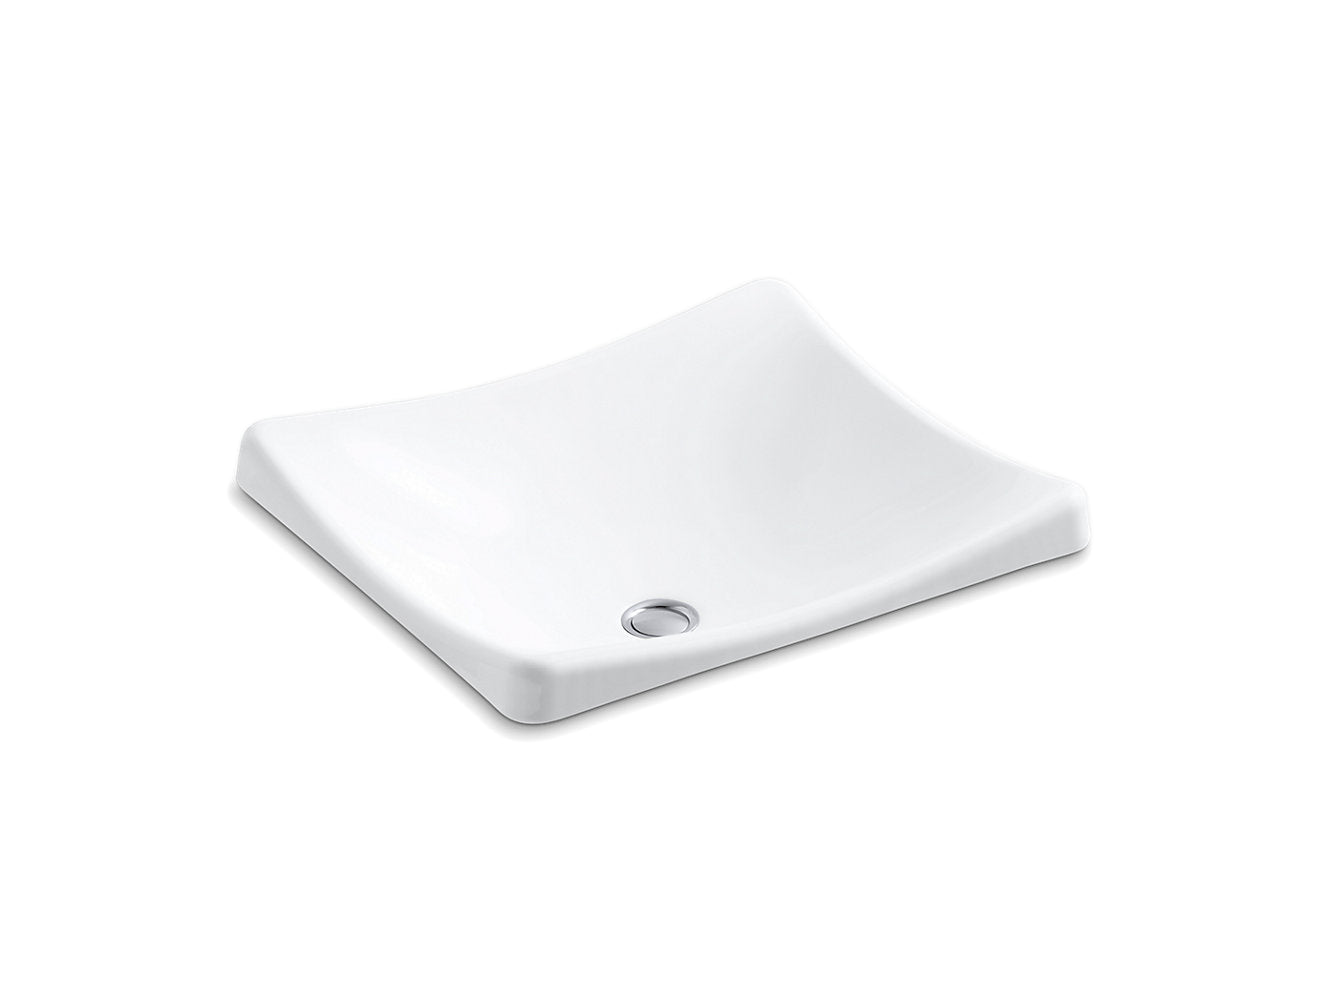 Kohler DemiLav Wading Pool 18 ¼" x 15 ⅝" Vessel Bathroom Sink - White